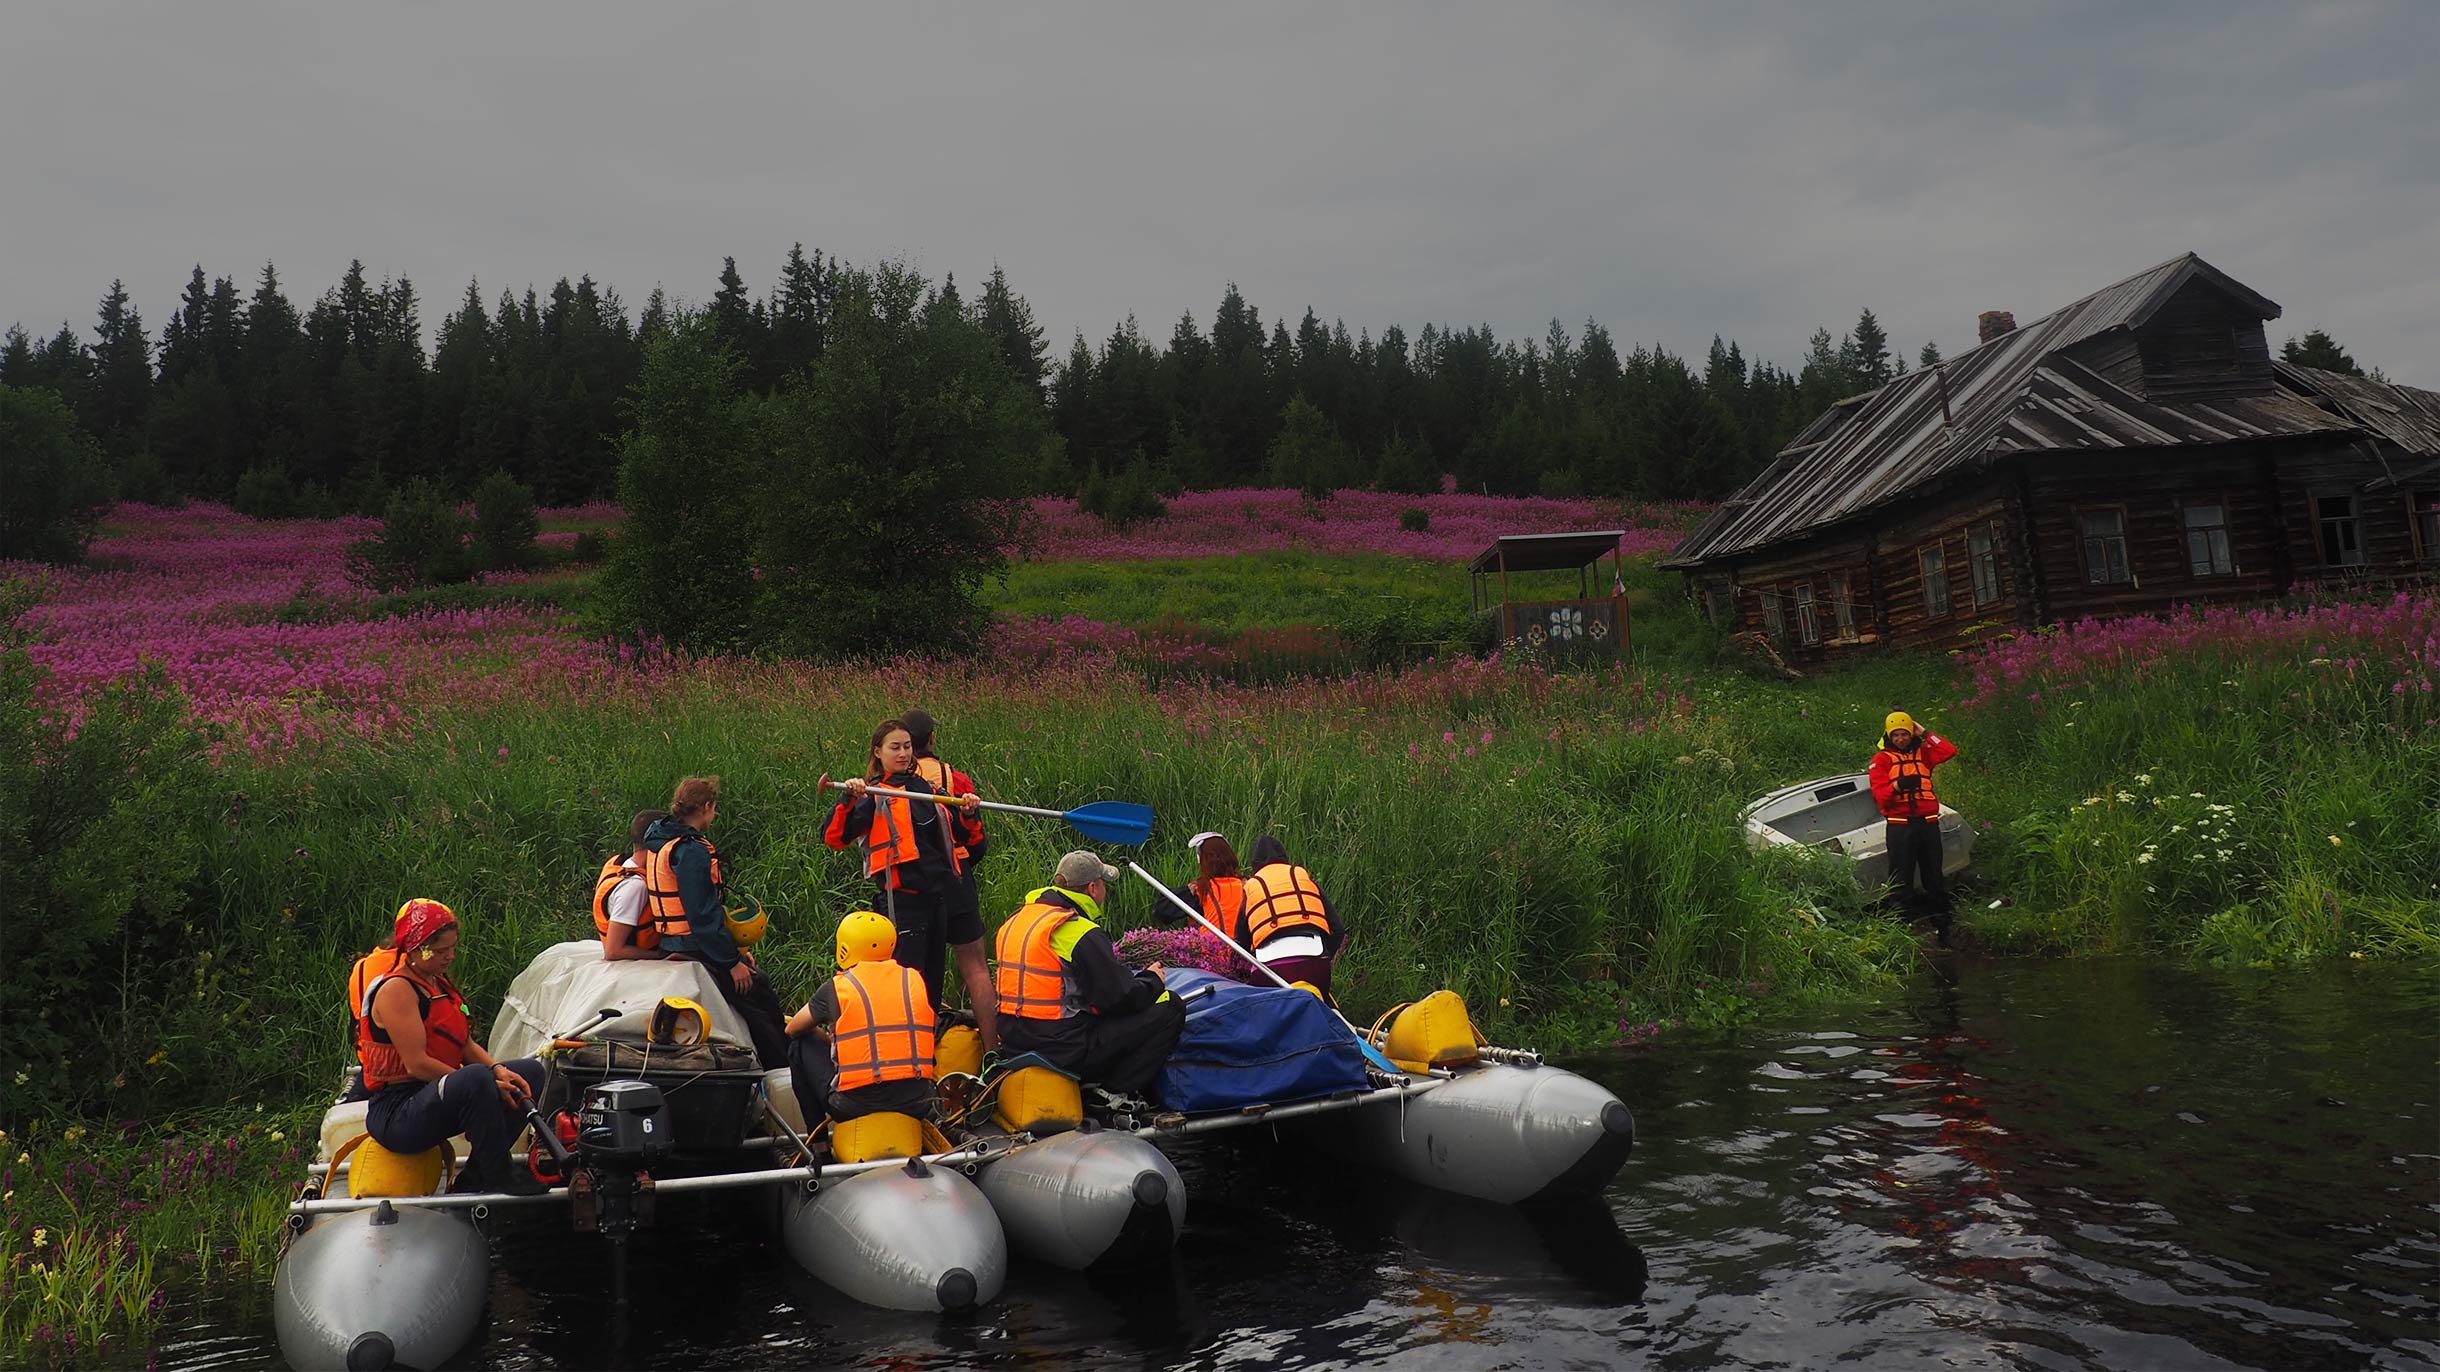 Сплав по реке в Карелии: маршрут, подготовка, на чем сплавляться,  снаряжение и безопасность